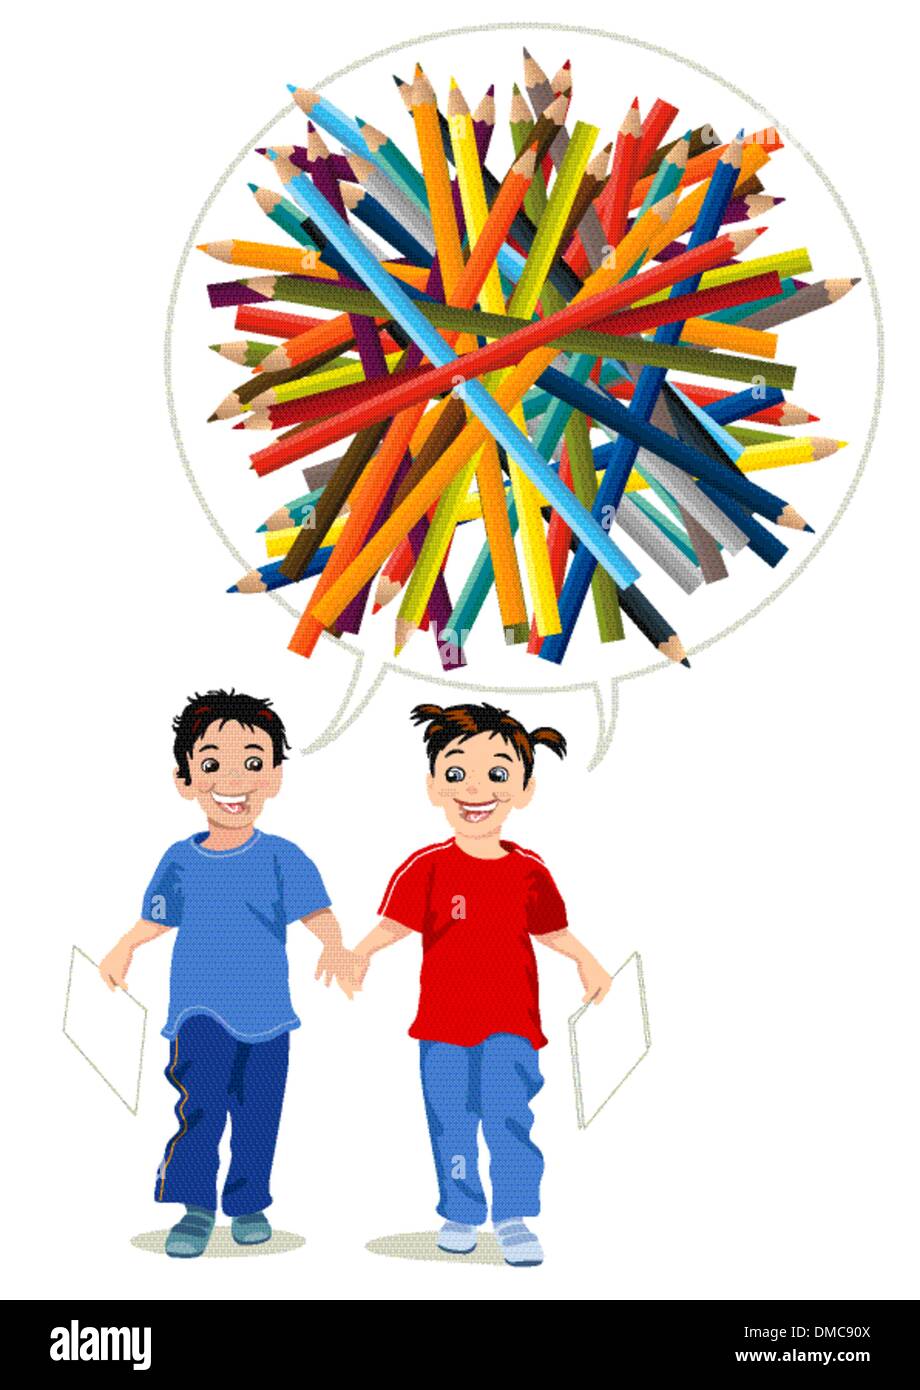 Kinder malen mit farbigen Stiften Stock Vektor